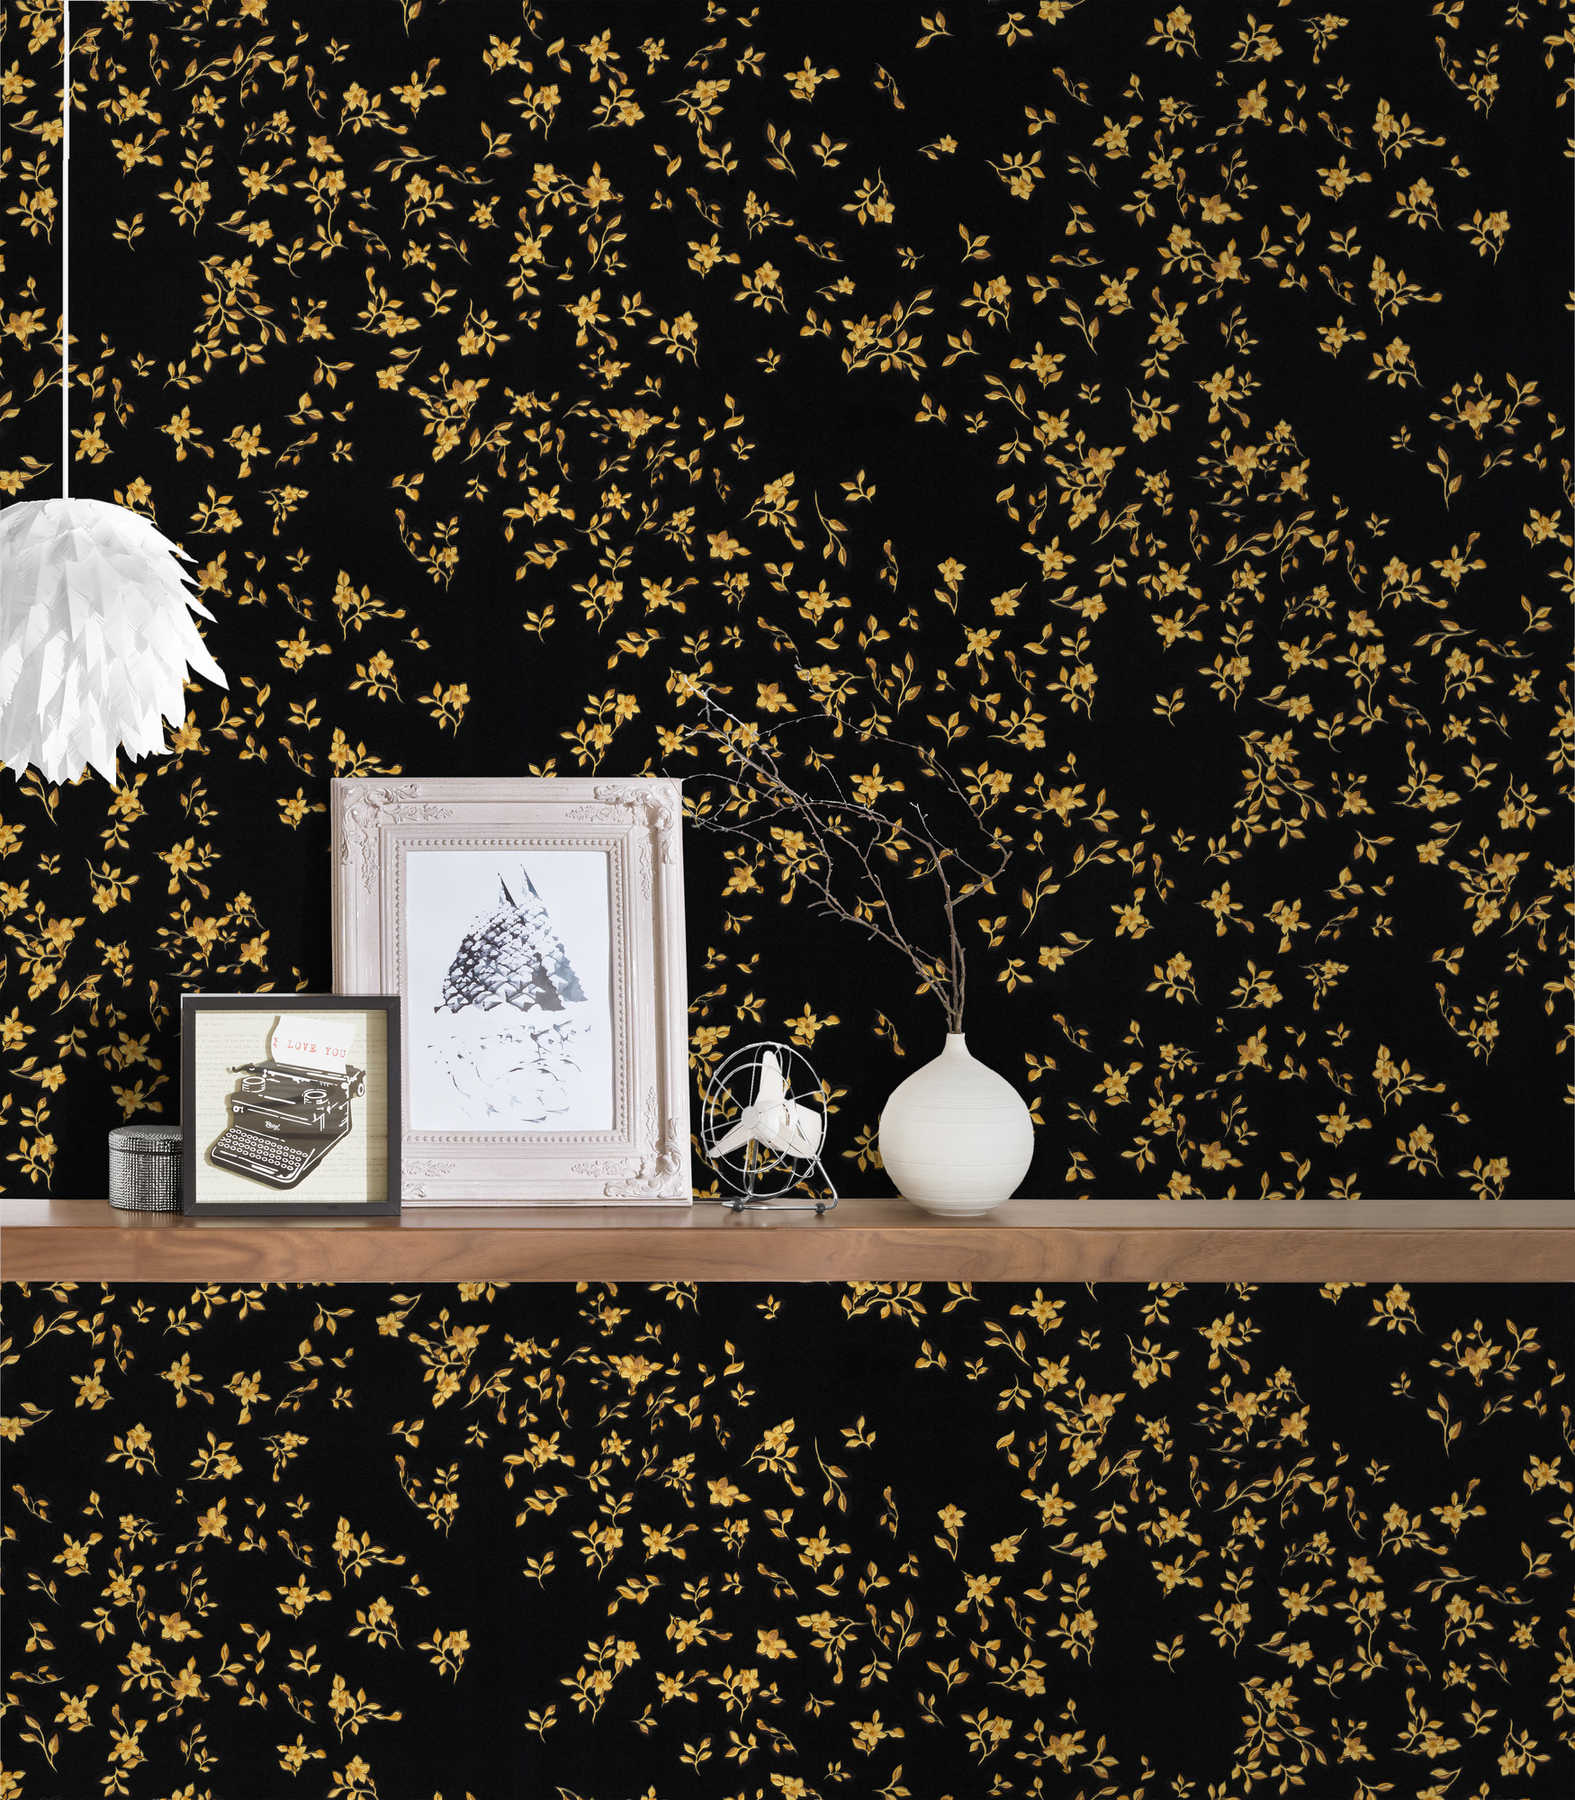             Black VERSACE wallpaper in floral design - Black, Gold
        